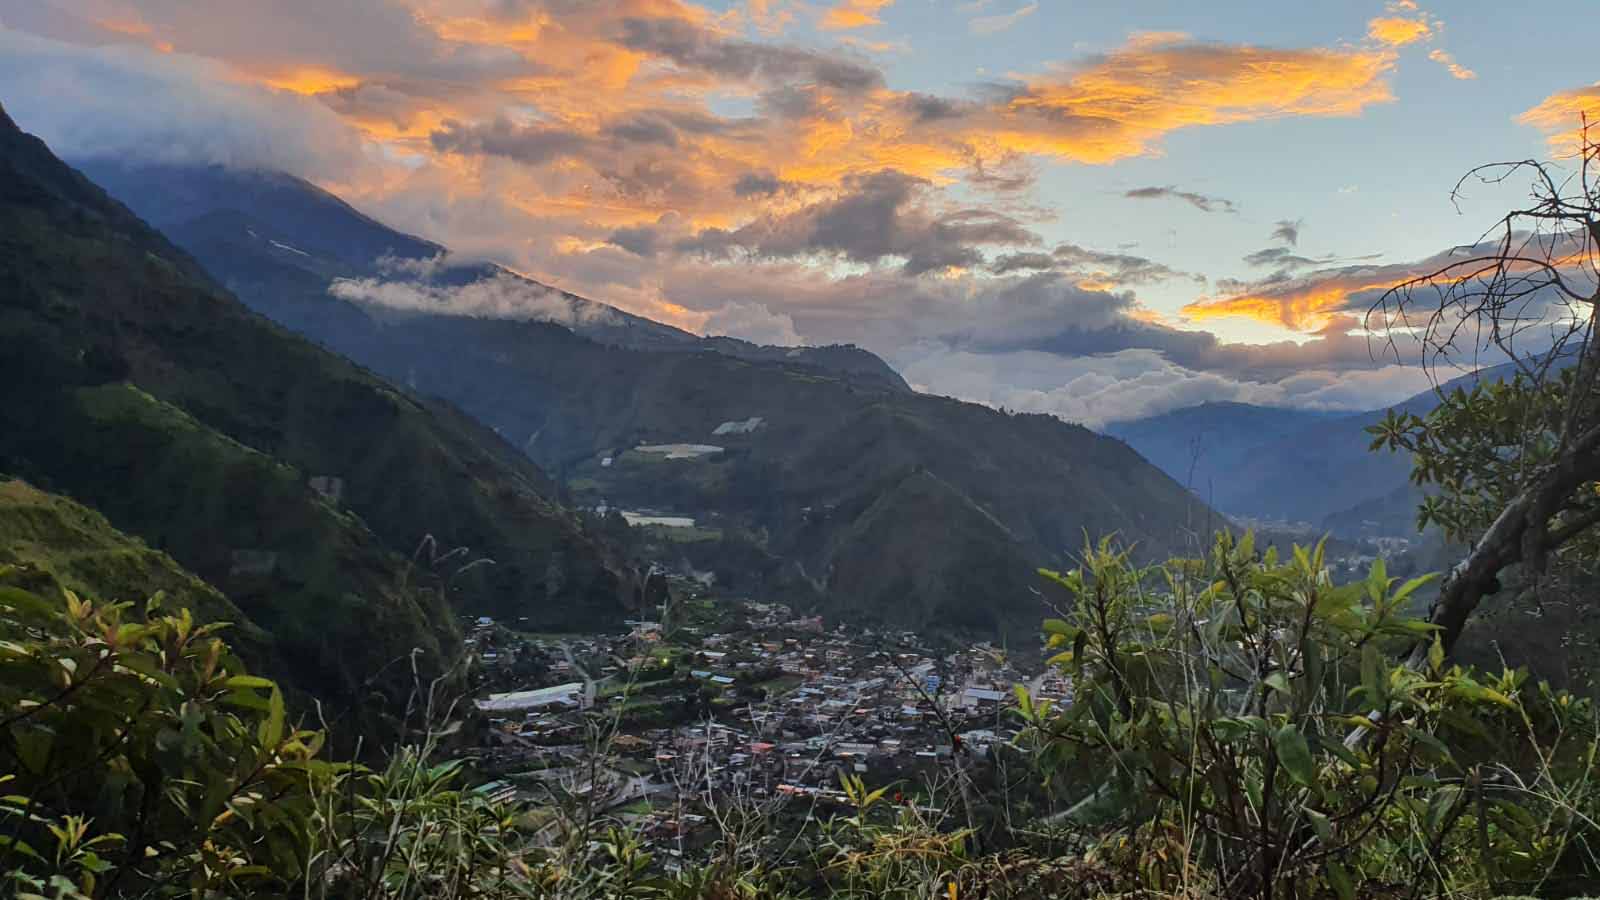  Ecuador | Baños - the adventure capital of Ecuador 